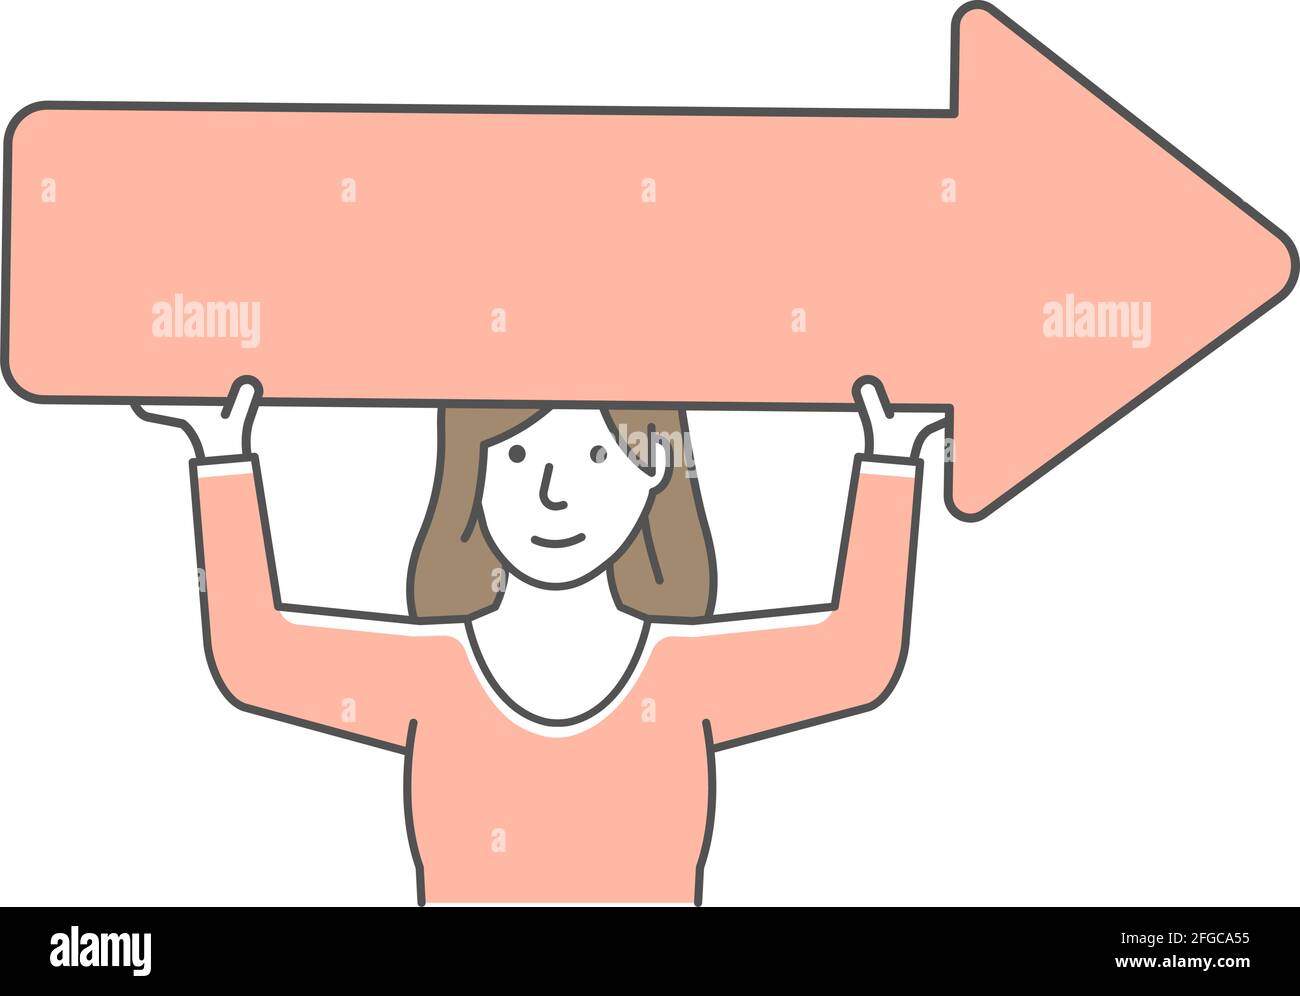 Jeune femme tenant le signe de flèche illustration vectorielle. Illustration de Vecteur